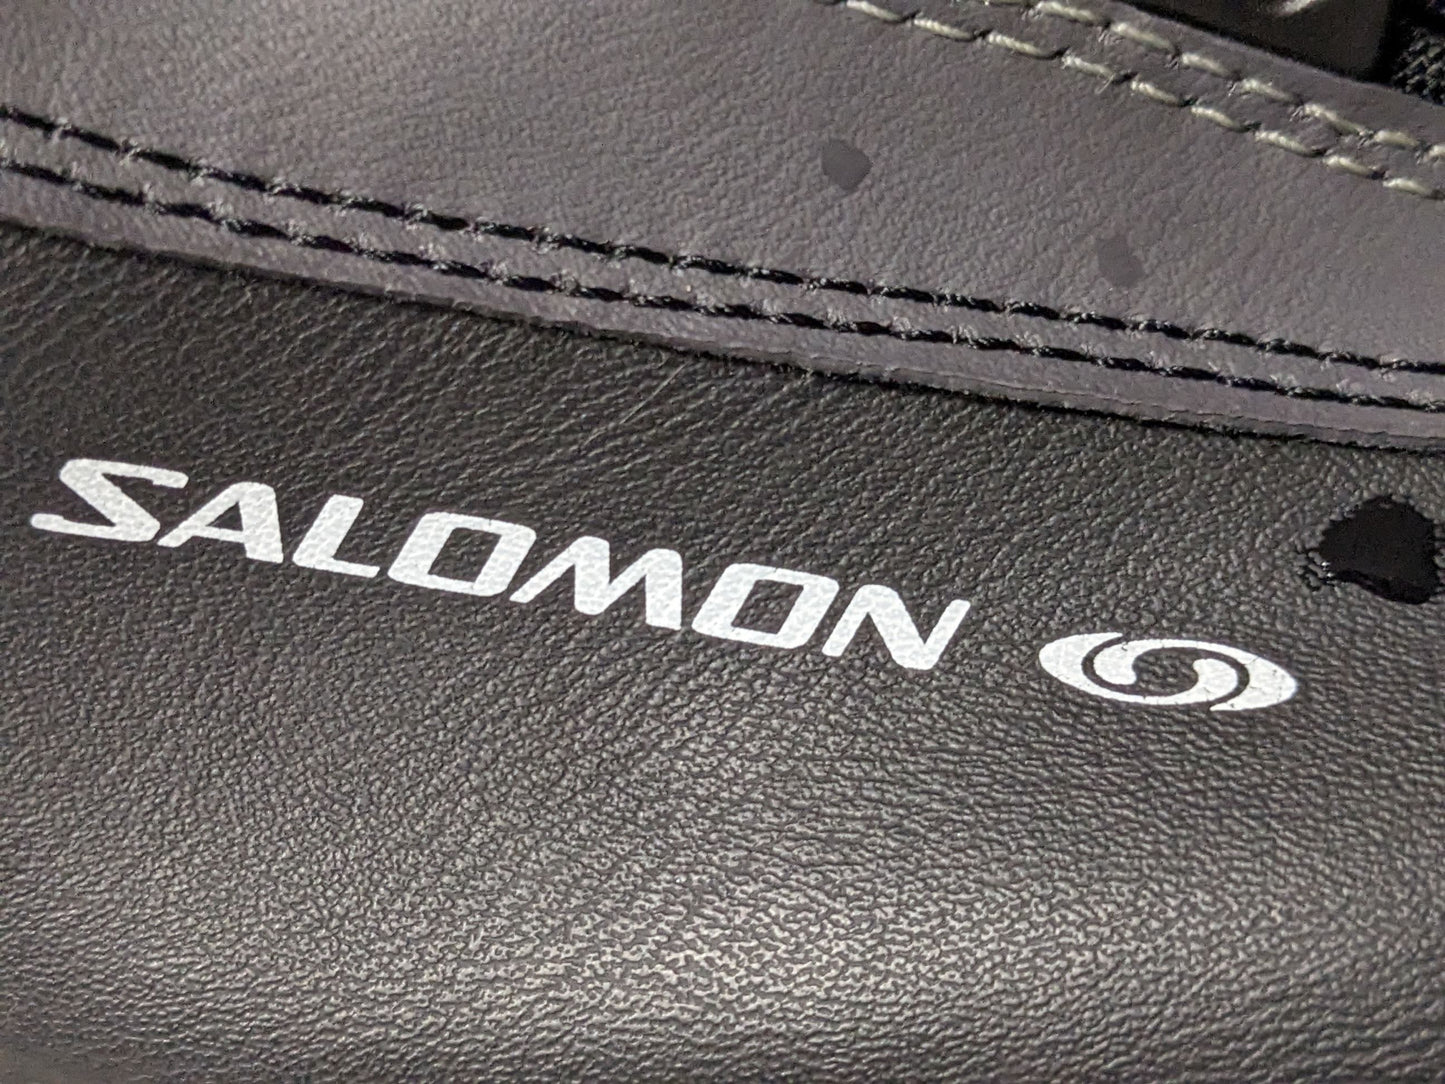 Salomon e3 SNS XC Cross Country Profil Ski Boots Size 24 Color Black Condition Used